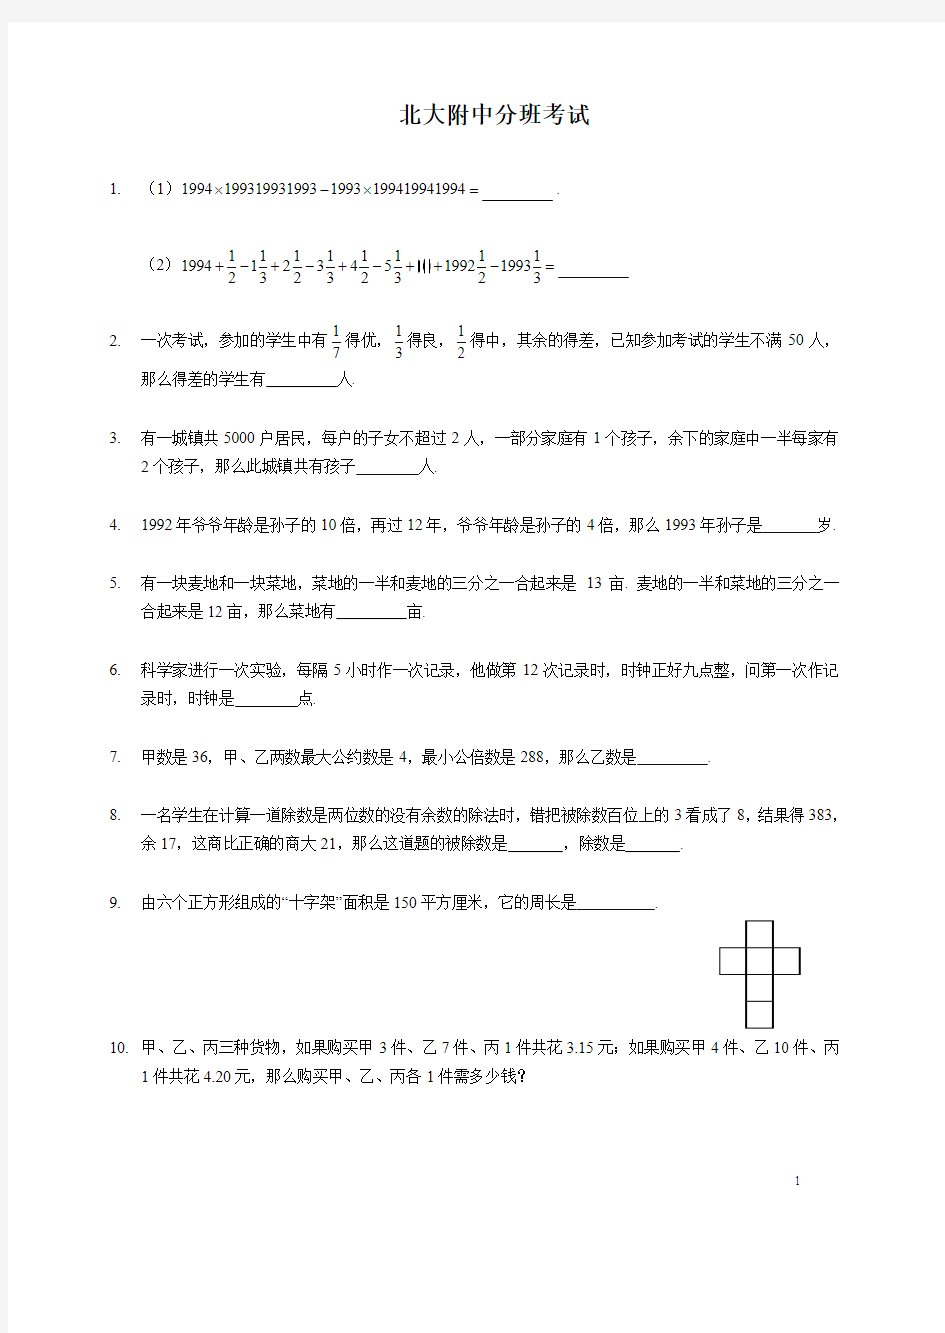 (最新)【小升初】北大附数学分班试卷参考